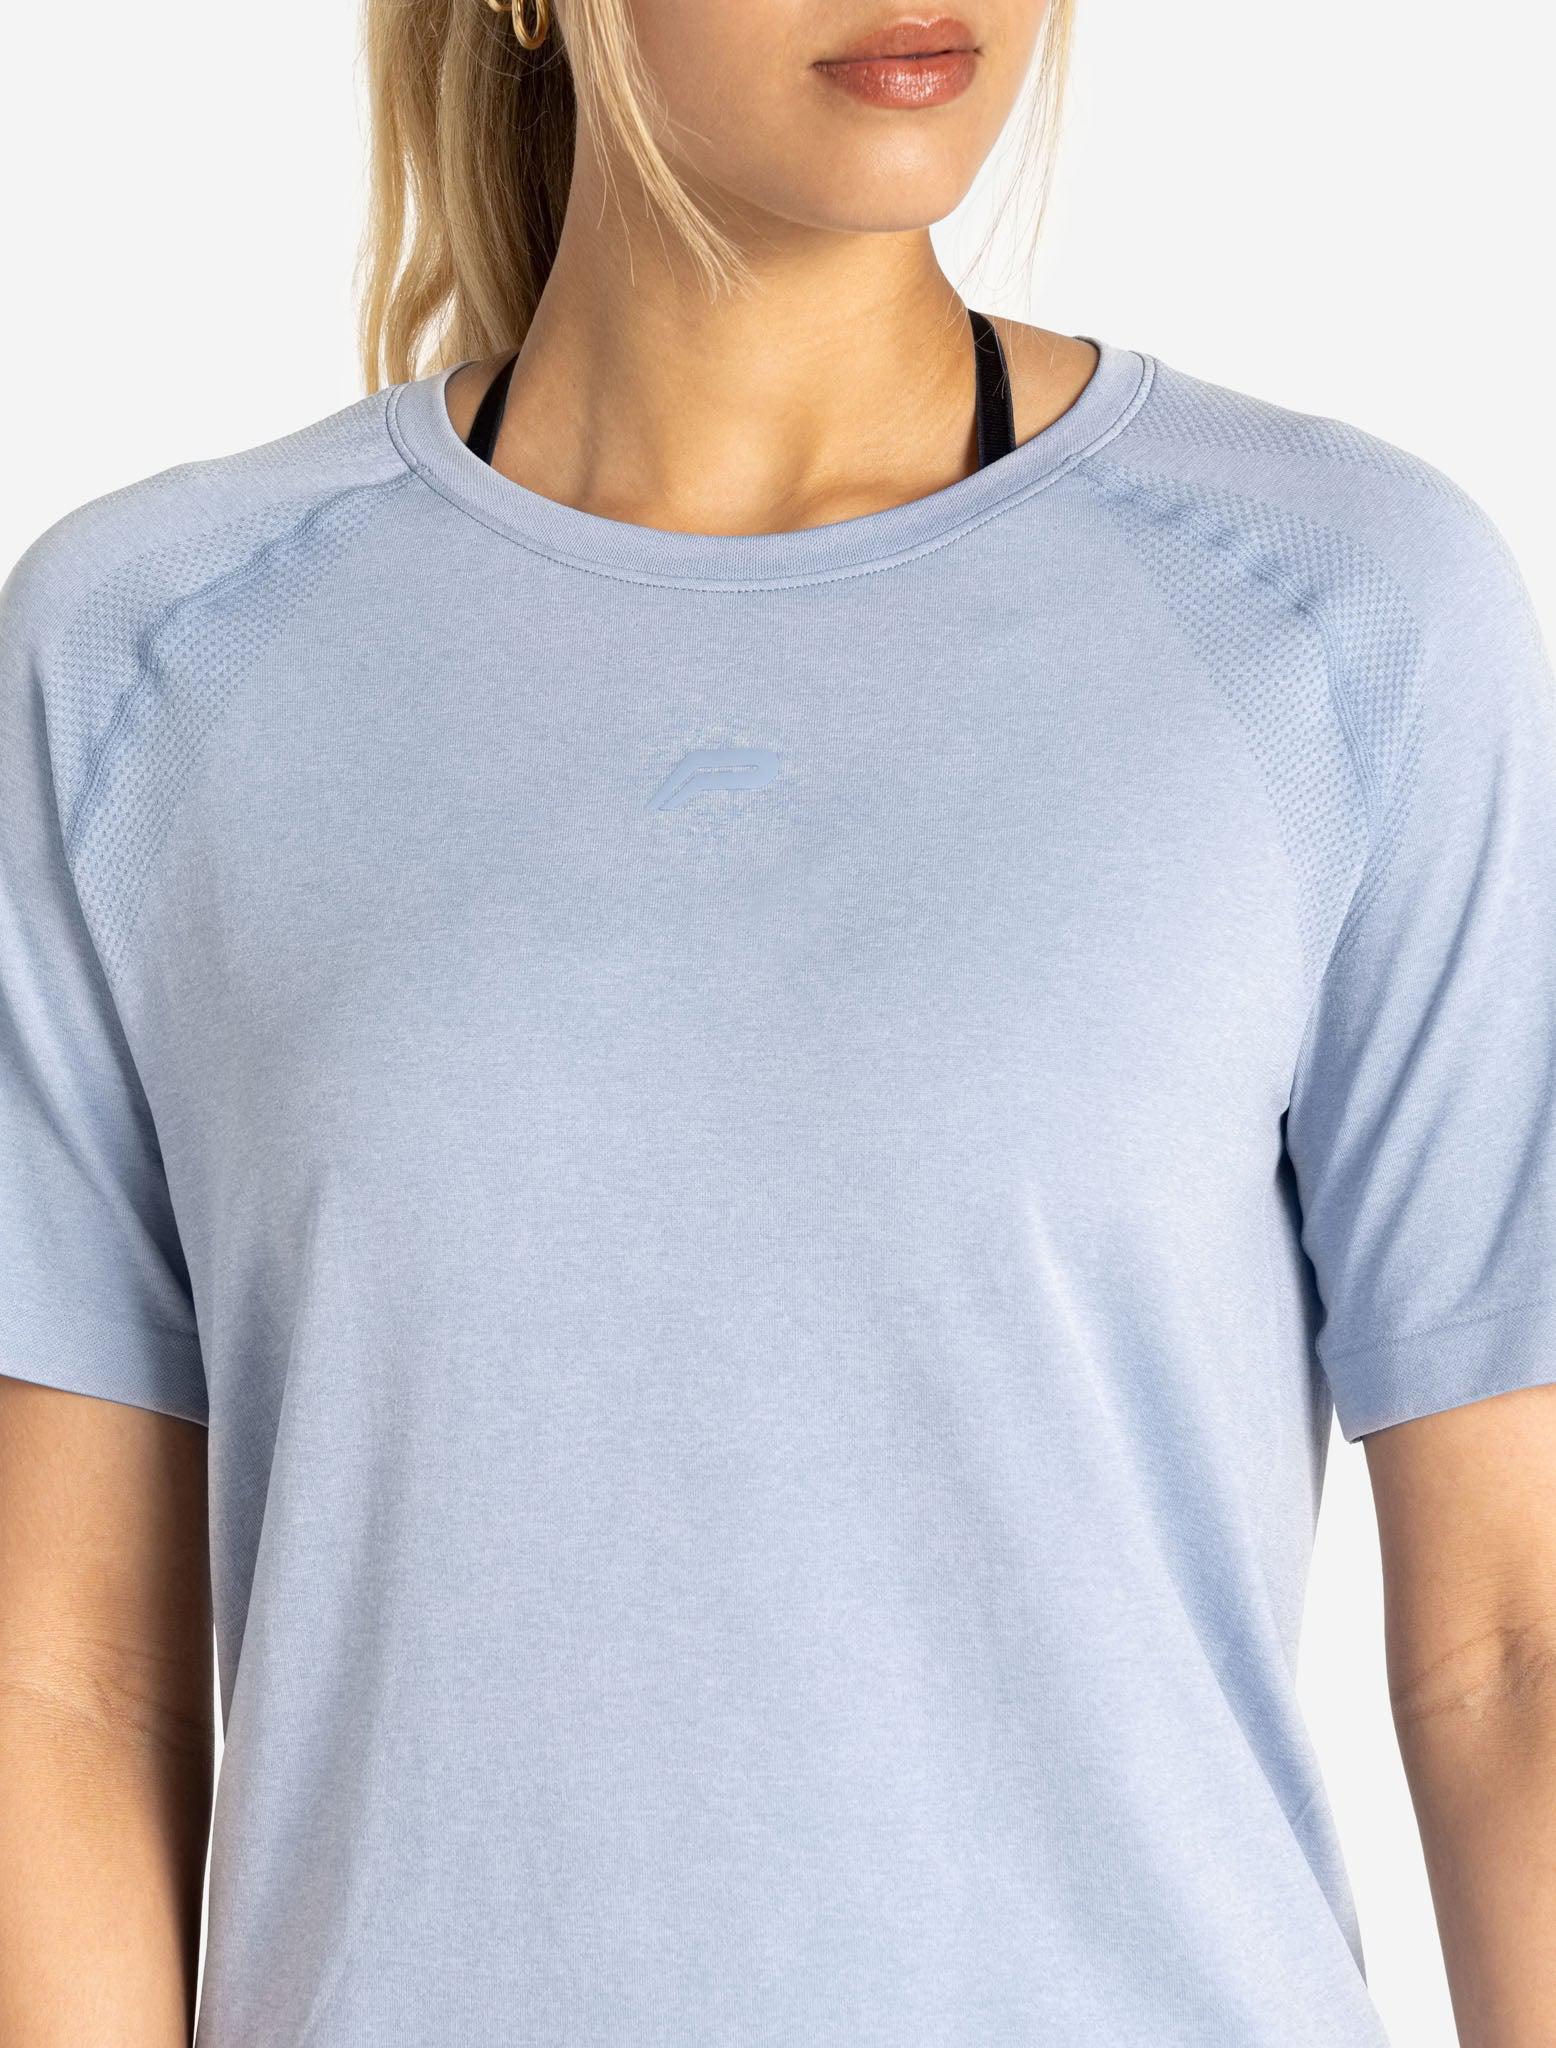 Seamless T-Shirt / Blue Marl Pursue Fitness 2